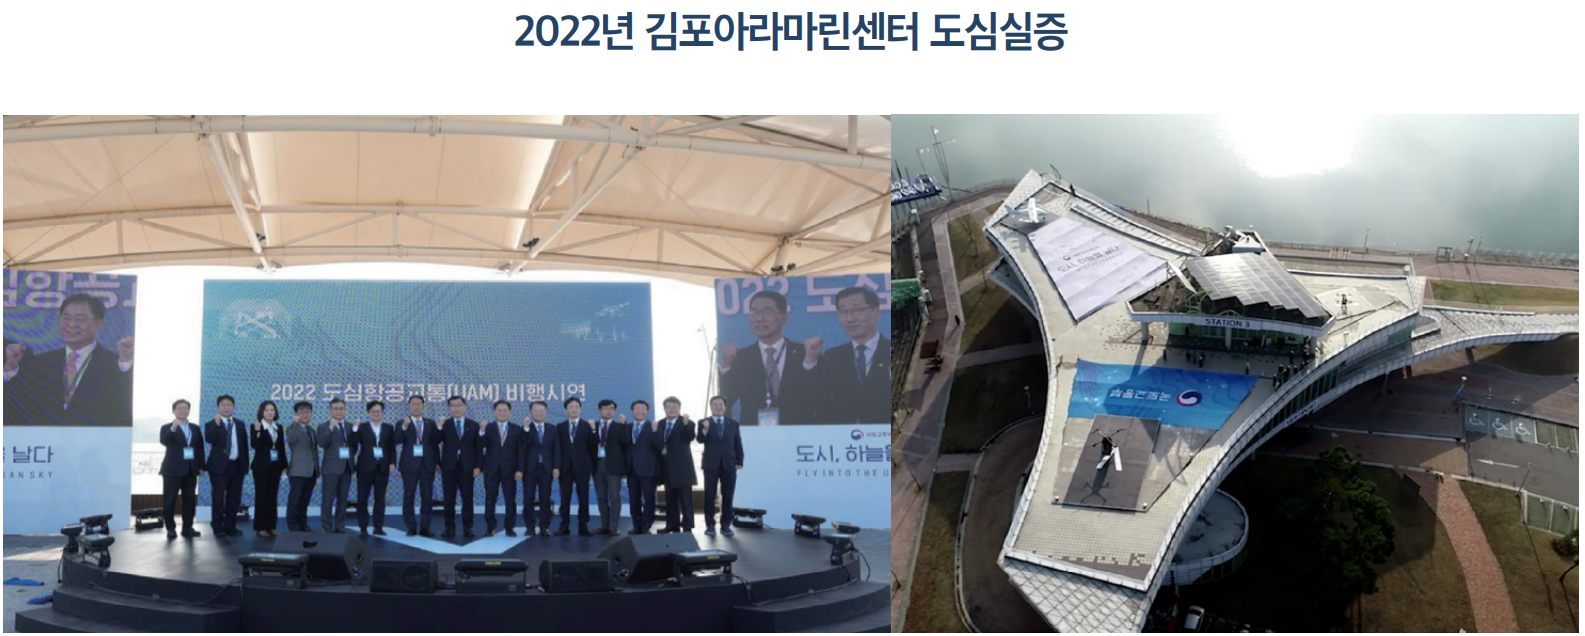 2022년 김포아라마린센터 도심실증